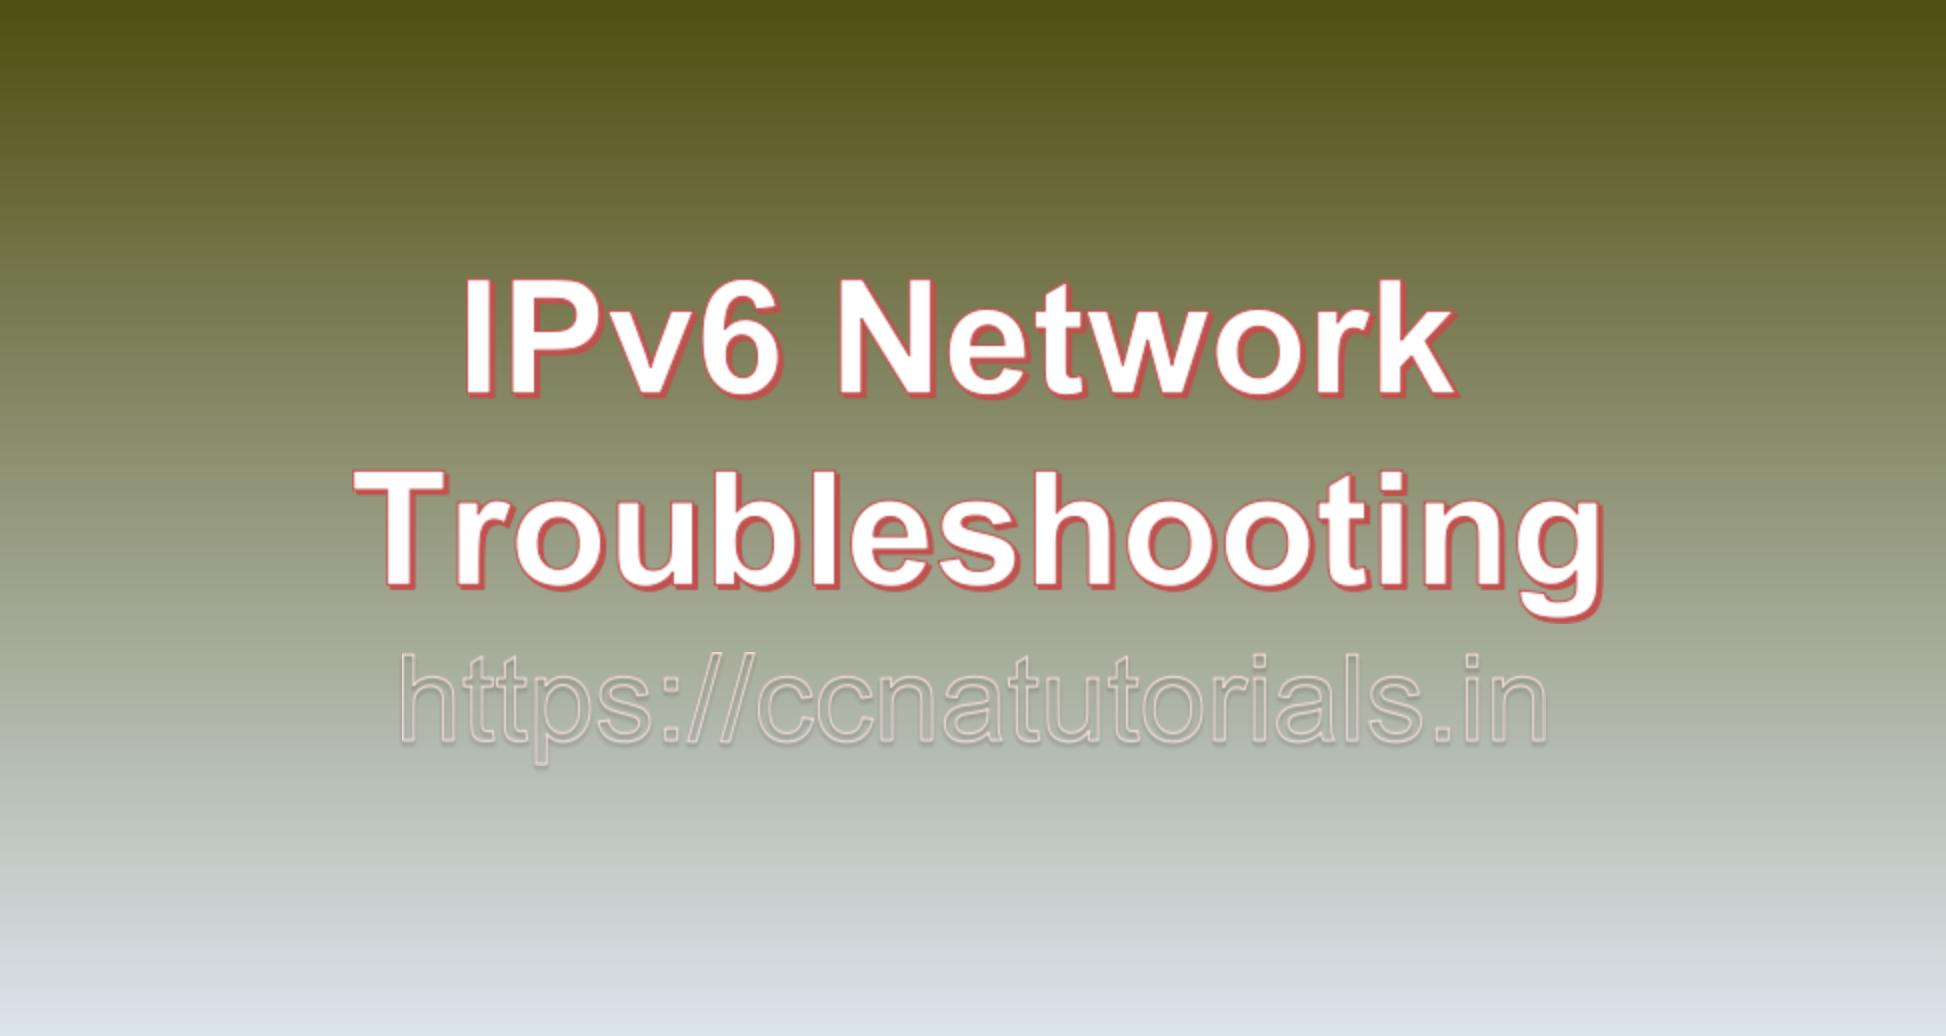 IPv6 Network Troubleshooting, ccna, ccna tutorials